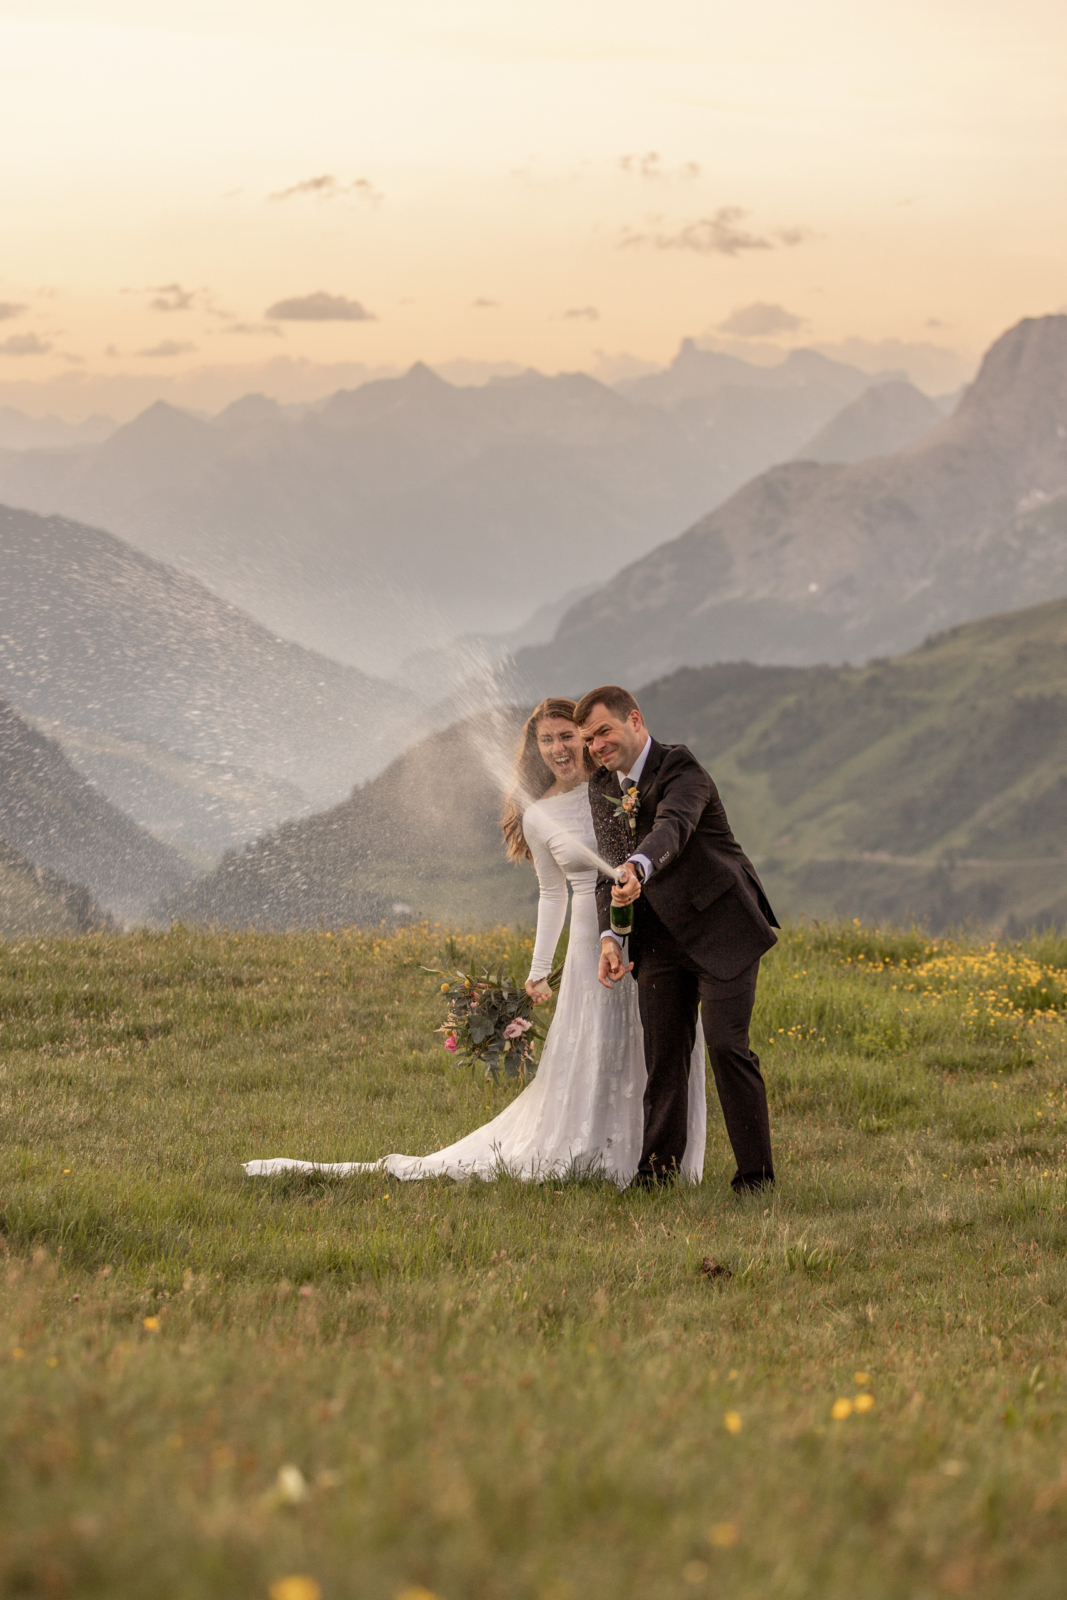 celebrating the Mountain Wedding in Austria